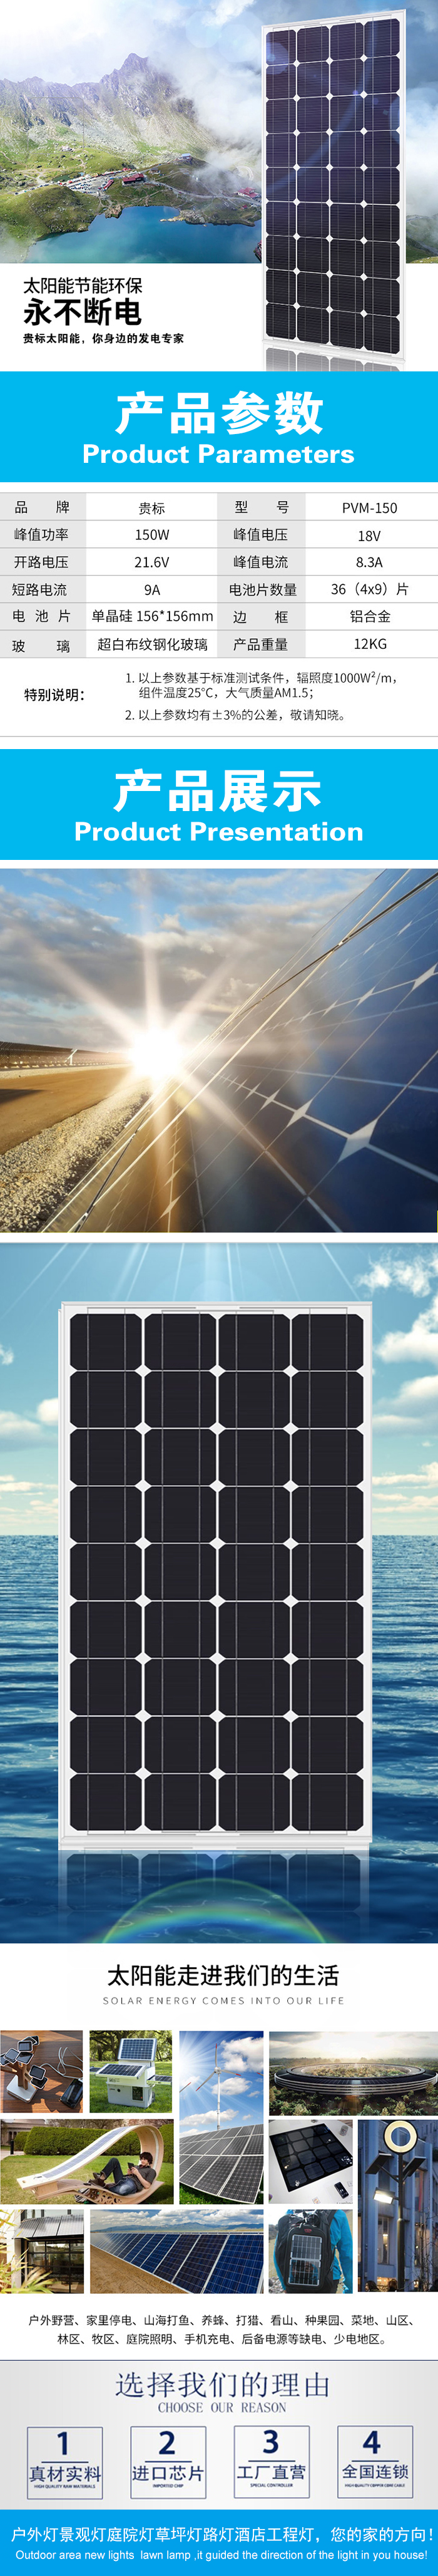 太阳能发电系统8